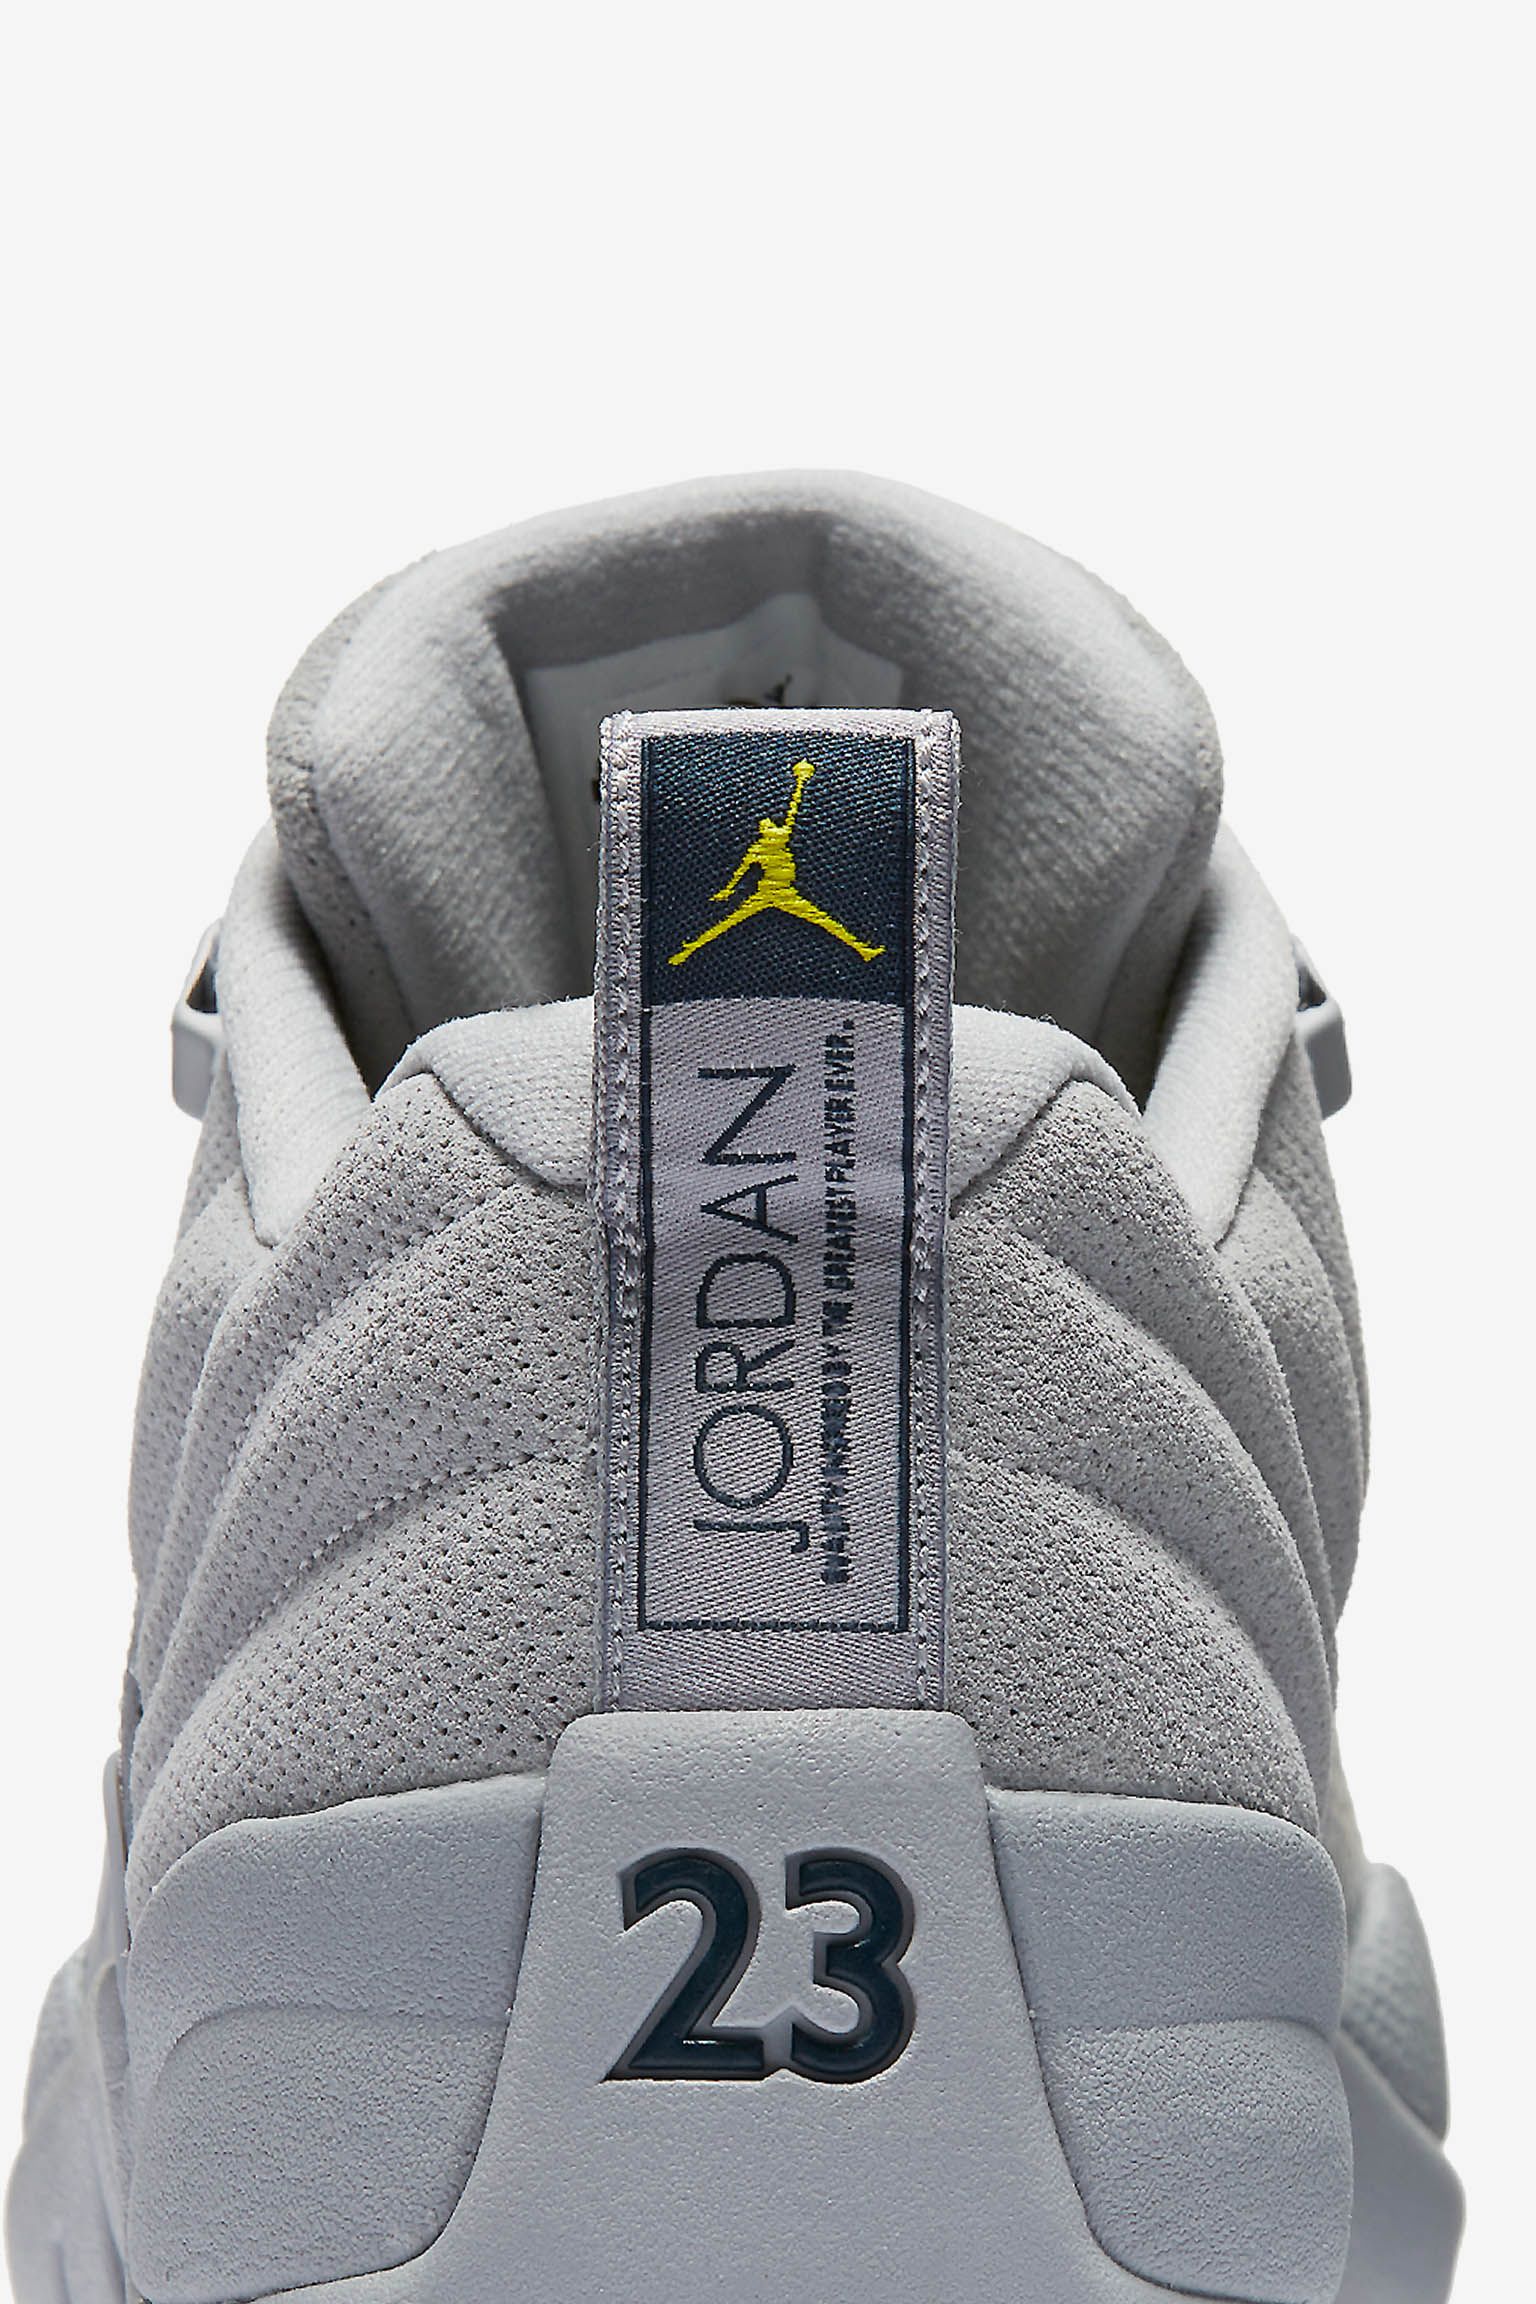 Air Jordan 12 Low Wolf Grey // Release Date